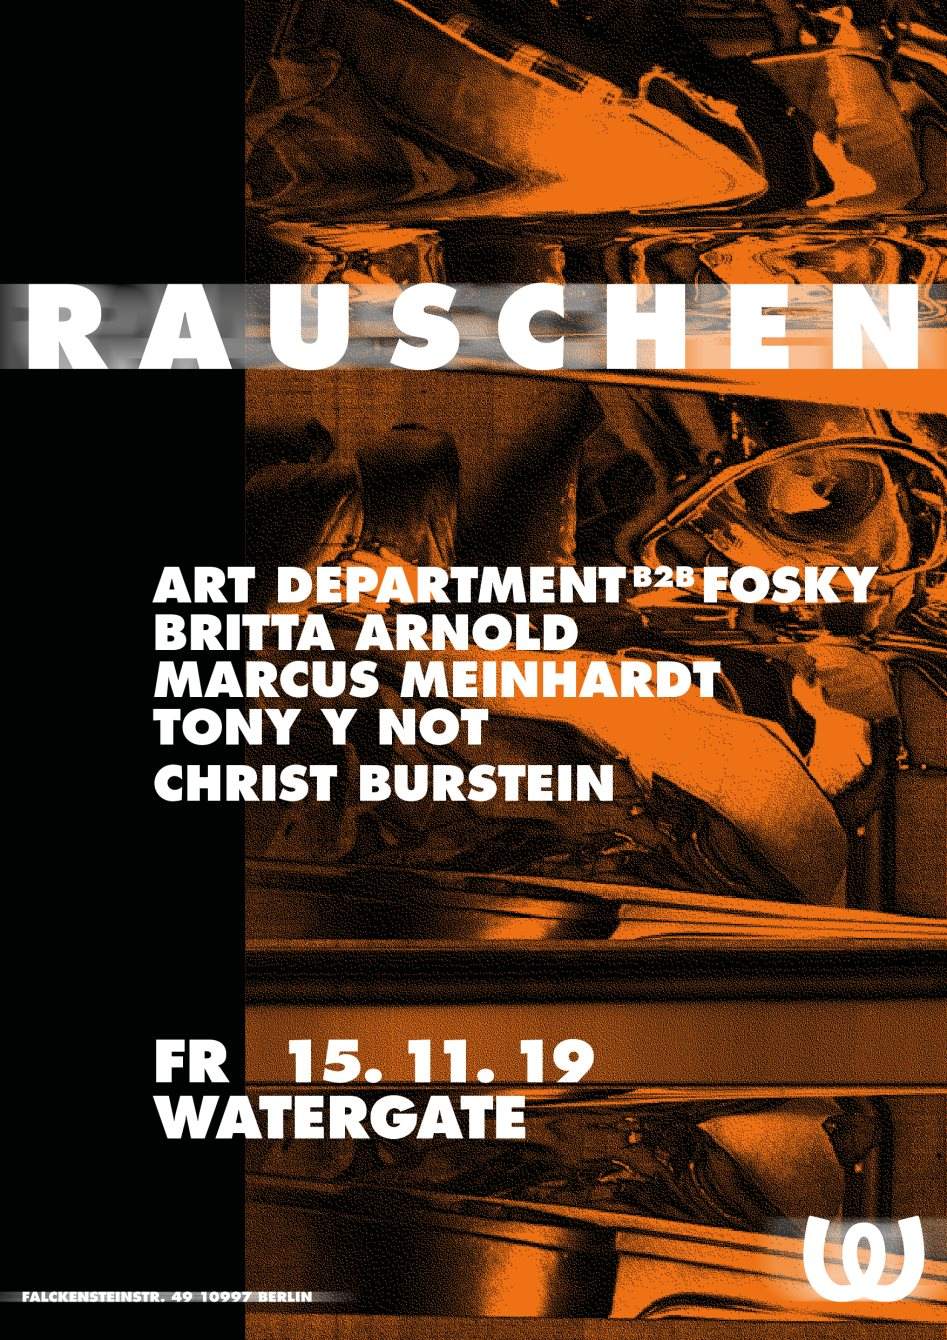 Rauschen with Art Department B2B Fosky, Britta Arnold, Marcus Meinhardt, Tony Y Not - Página frontal